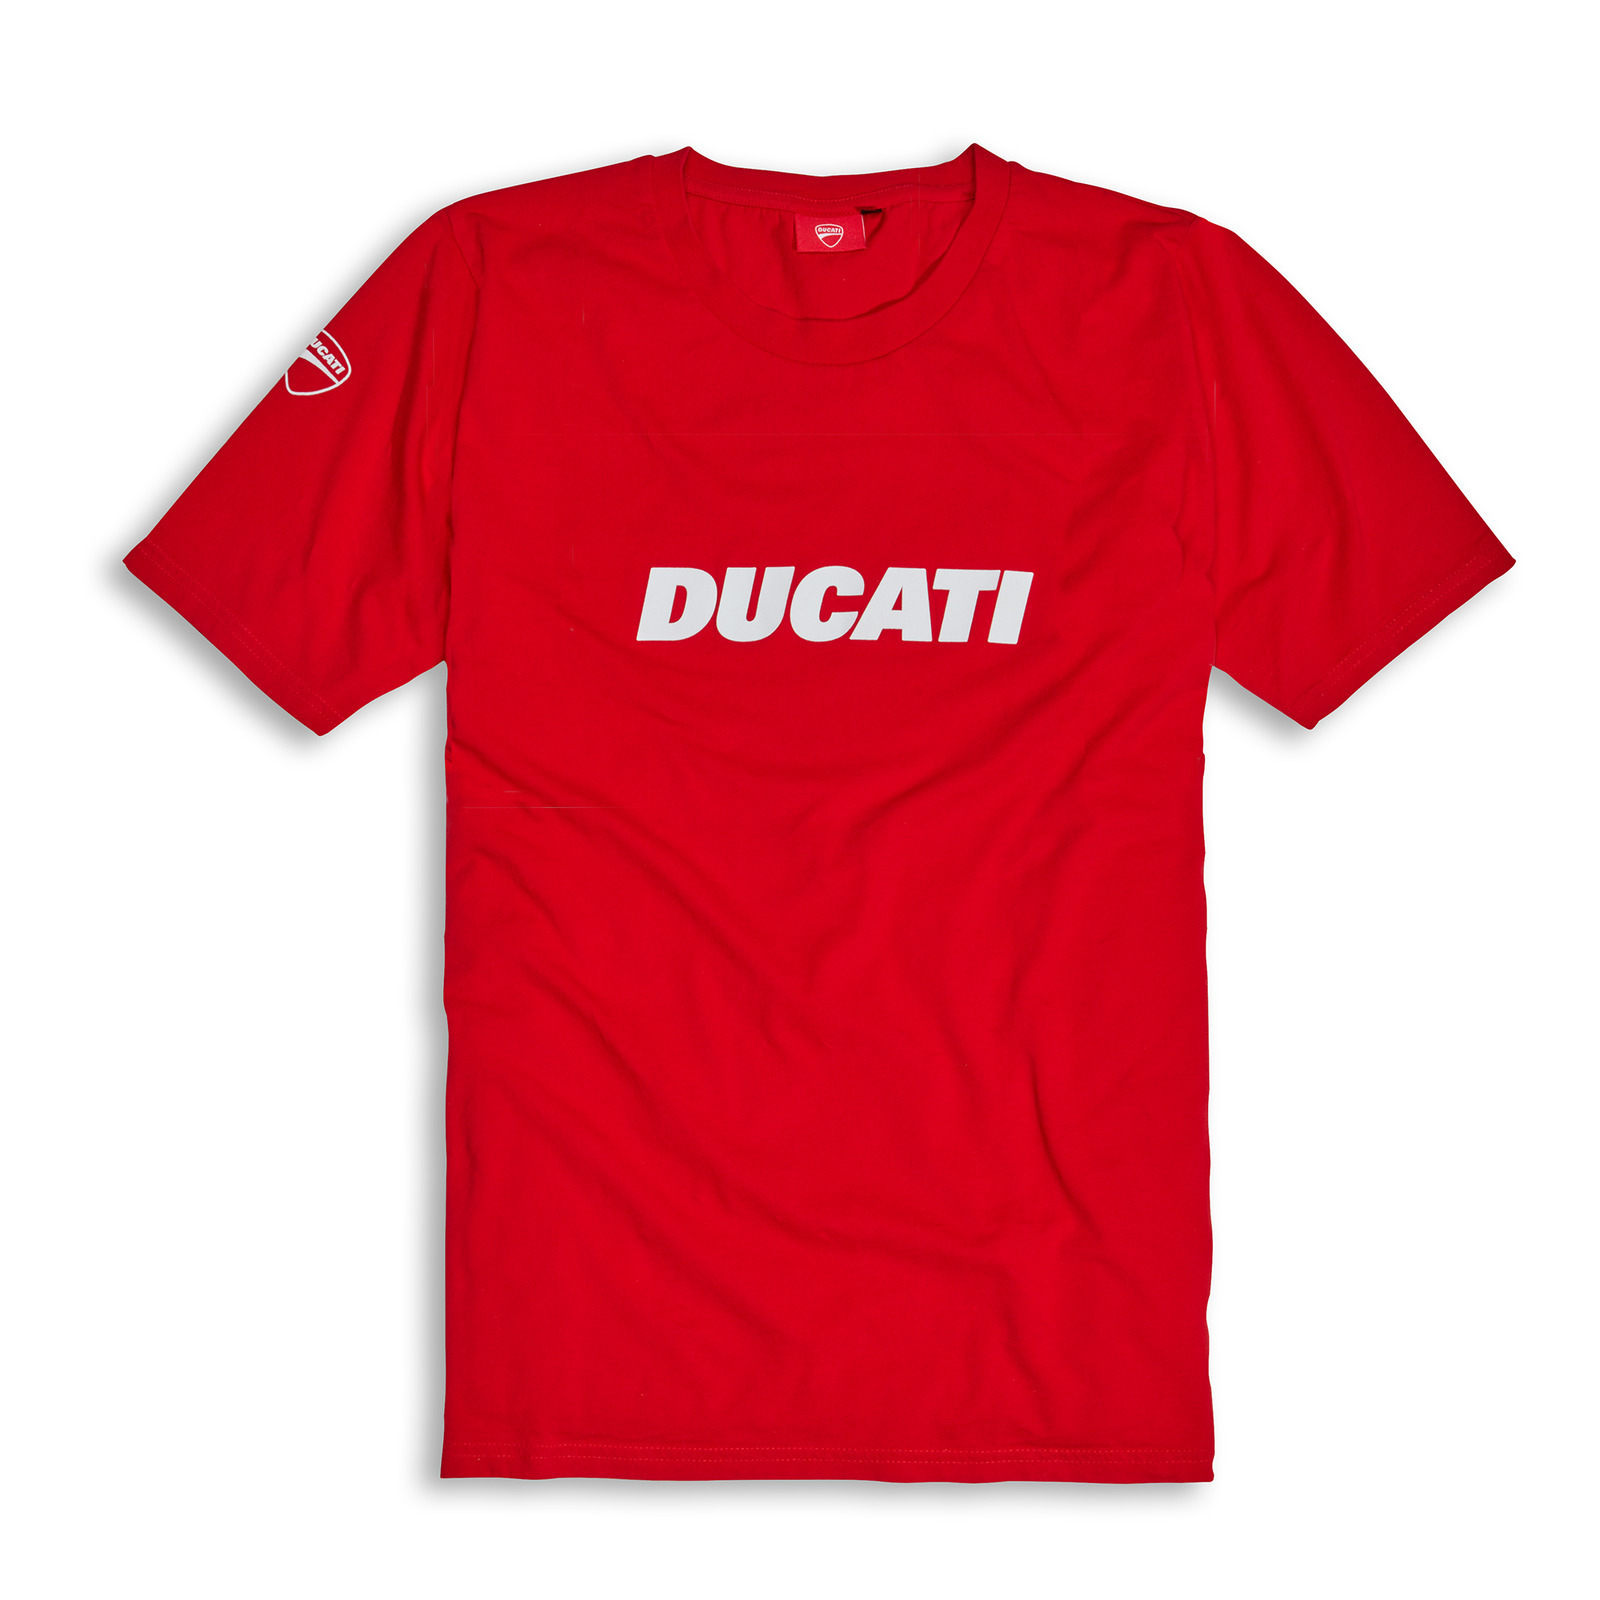 Ducati Genuine Ducatiana 2 Red T-Shirt | Ducati | Ducati Apparel ...